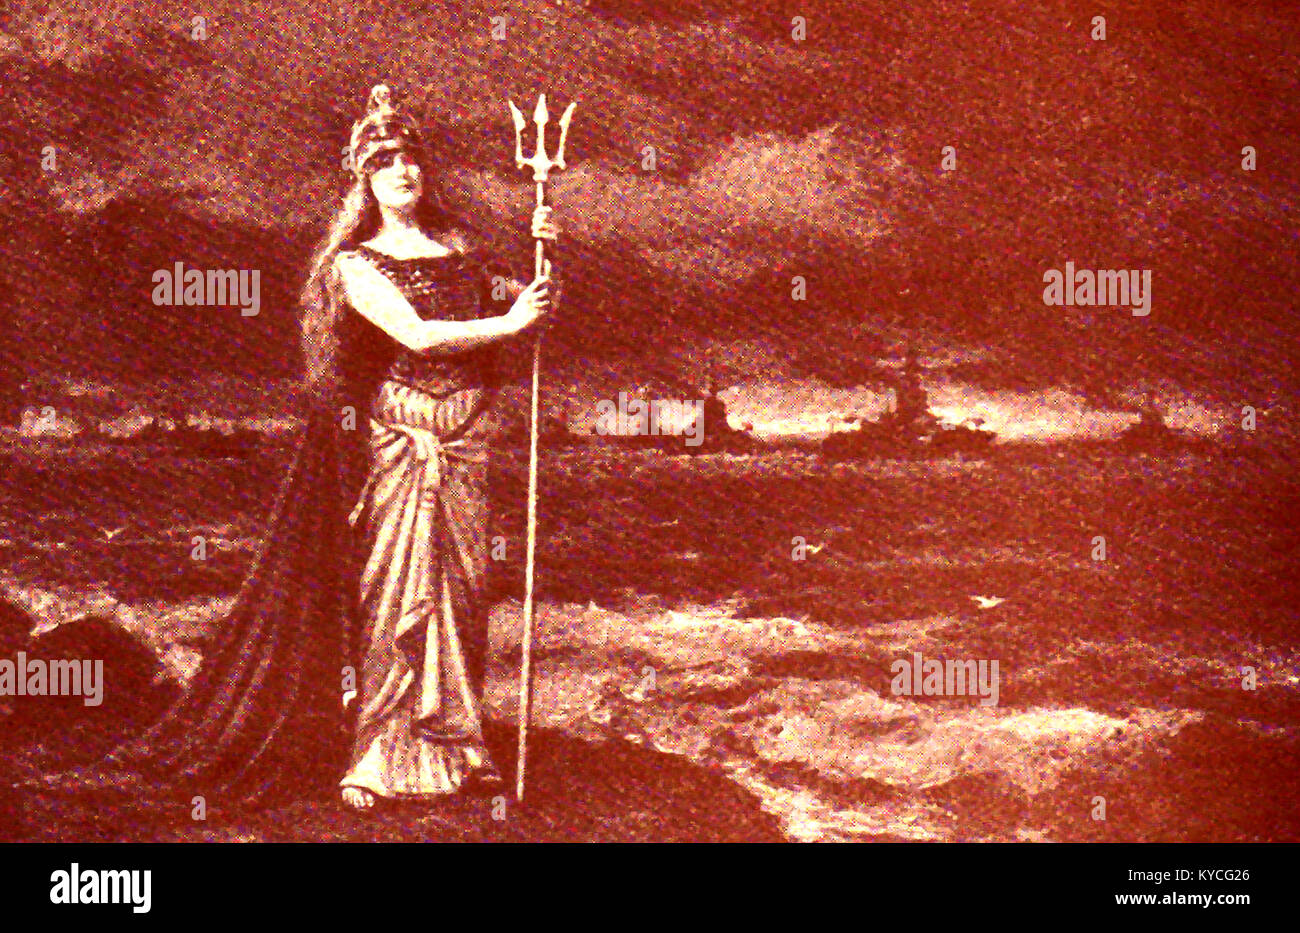 Les Vagues Règles Britannia - une guerre mondiale une représentation de la mythique figure patriotique Britannia, une icône culturelle, avec les navires de guerre britanniques dans l'arrière-plan Banque D'Images